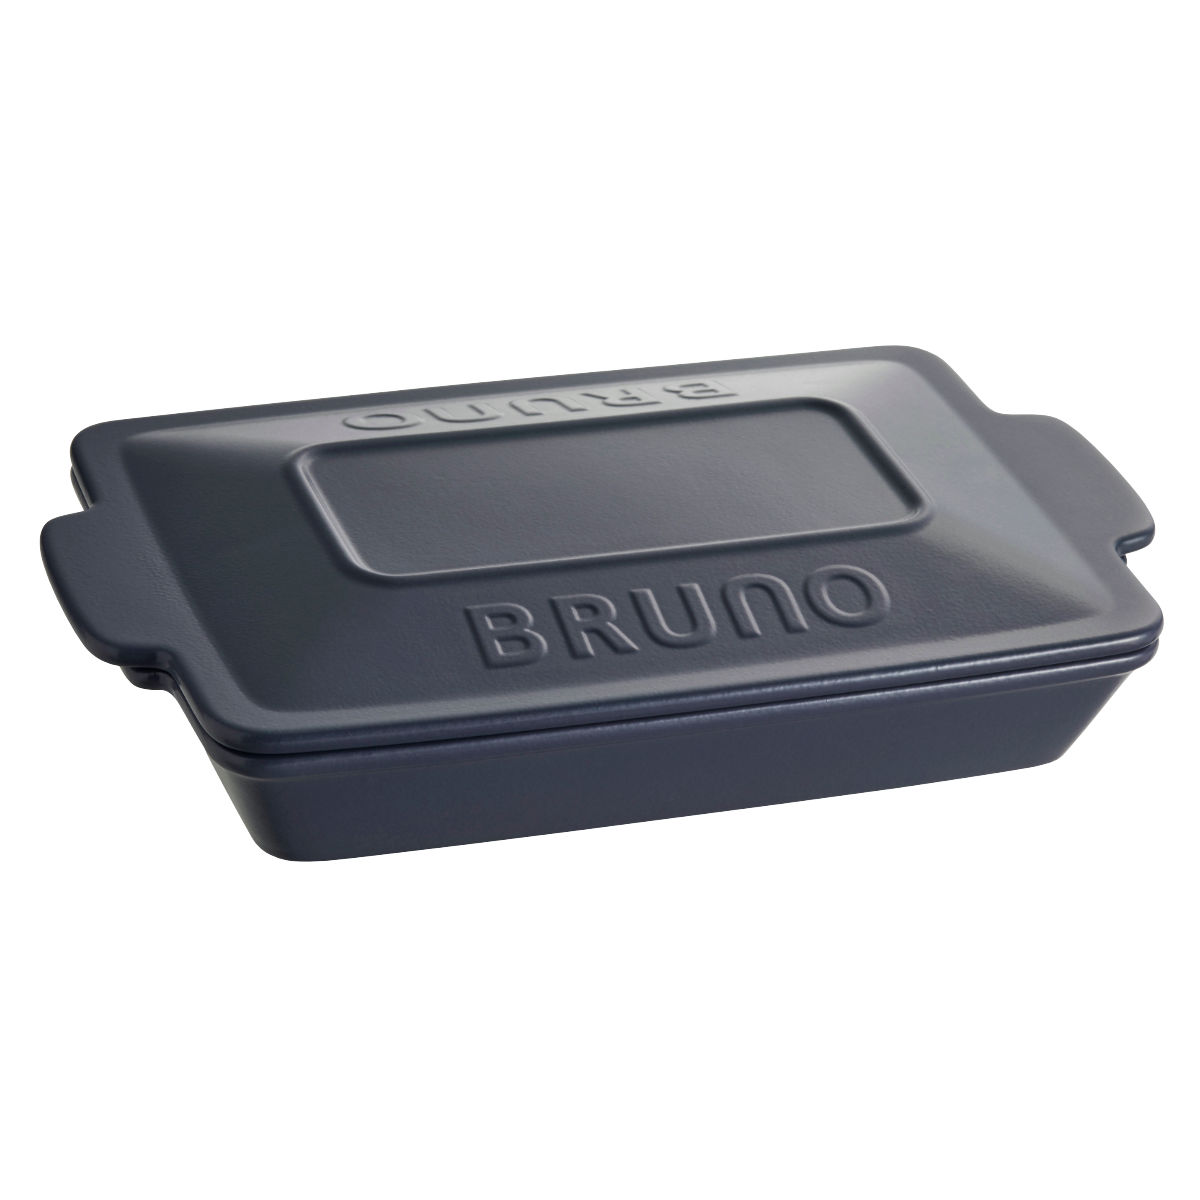 BRUNO セラミックグリルパン オーブン対応 電子レンジ対応 耐熱皿